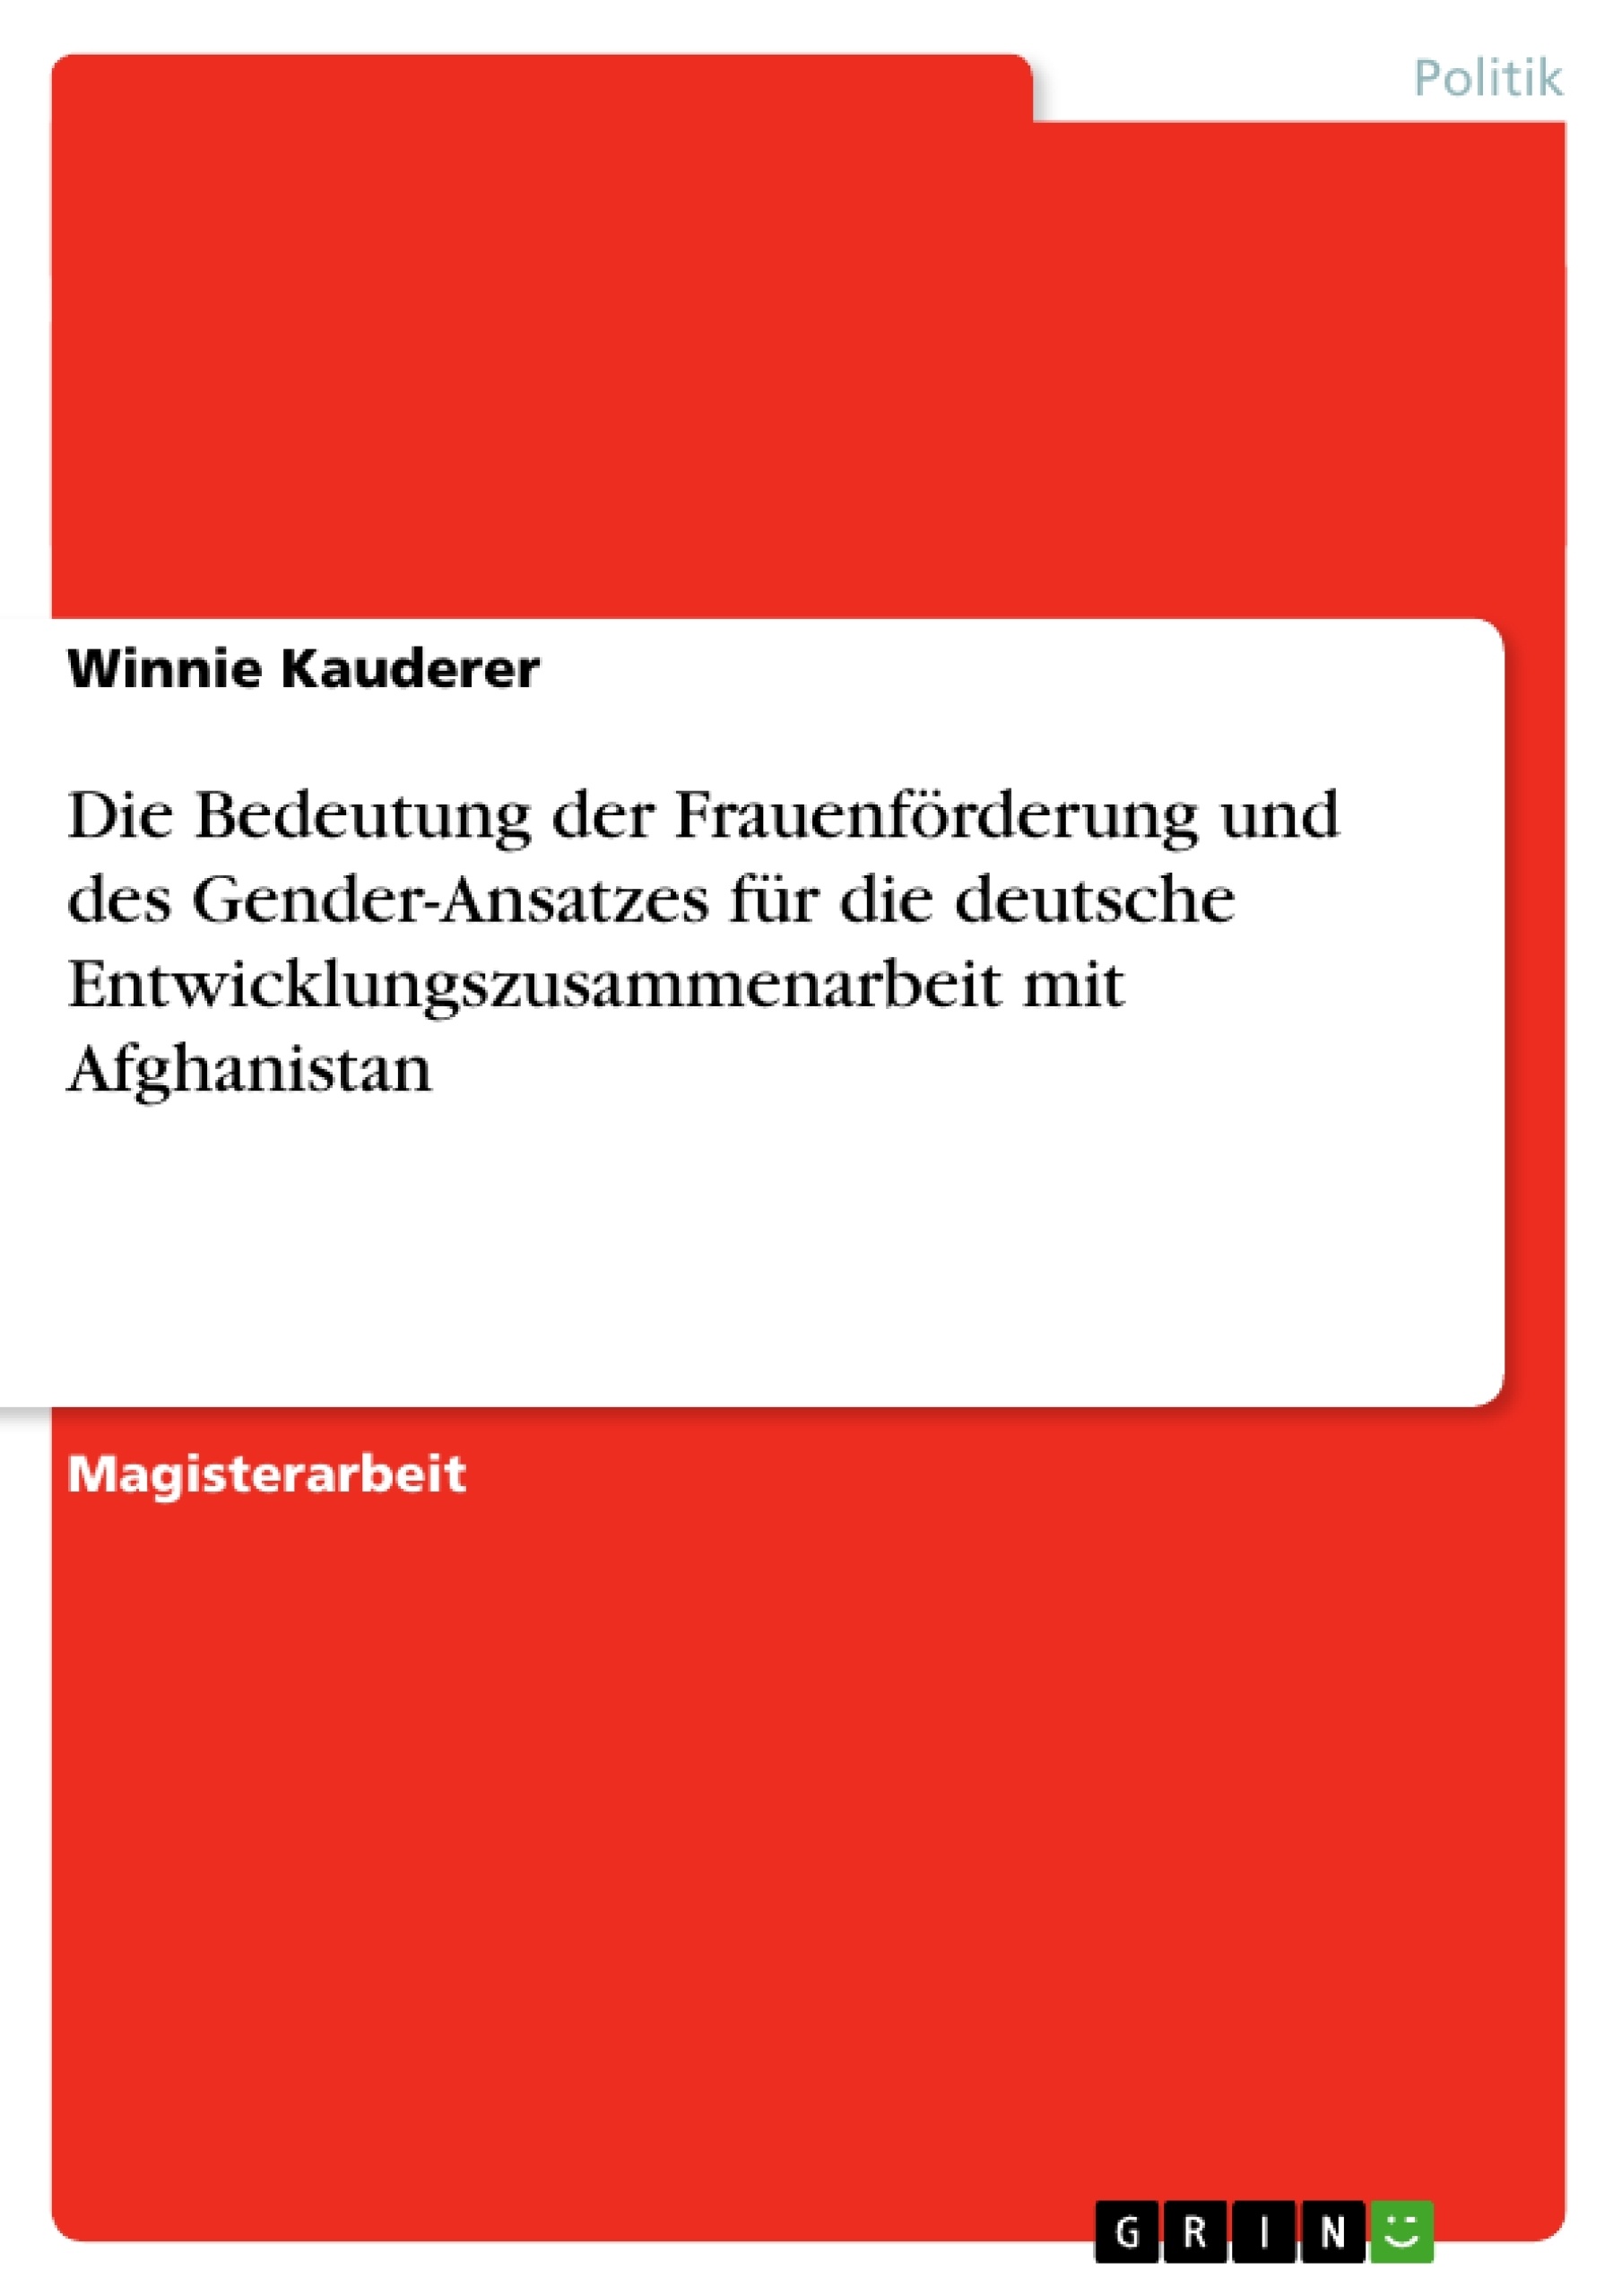 Title: Die Bedeutung der Frauenförderung und des Gender-Ansatzes für die deutsche Entwicklungszusammenarbeit mit Afghanistan